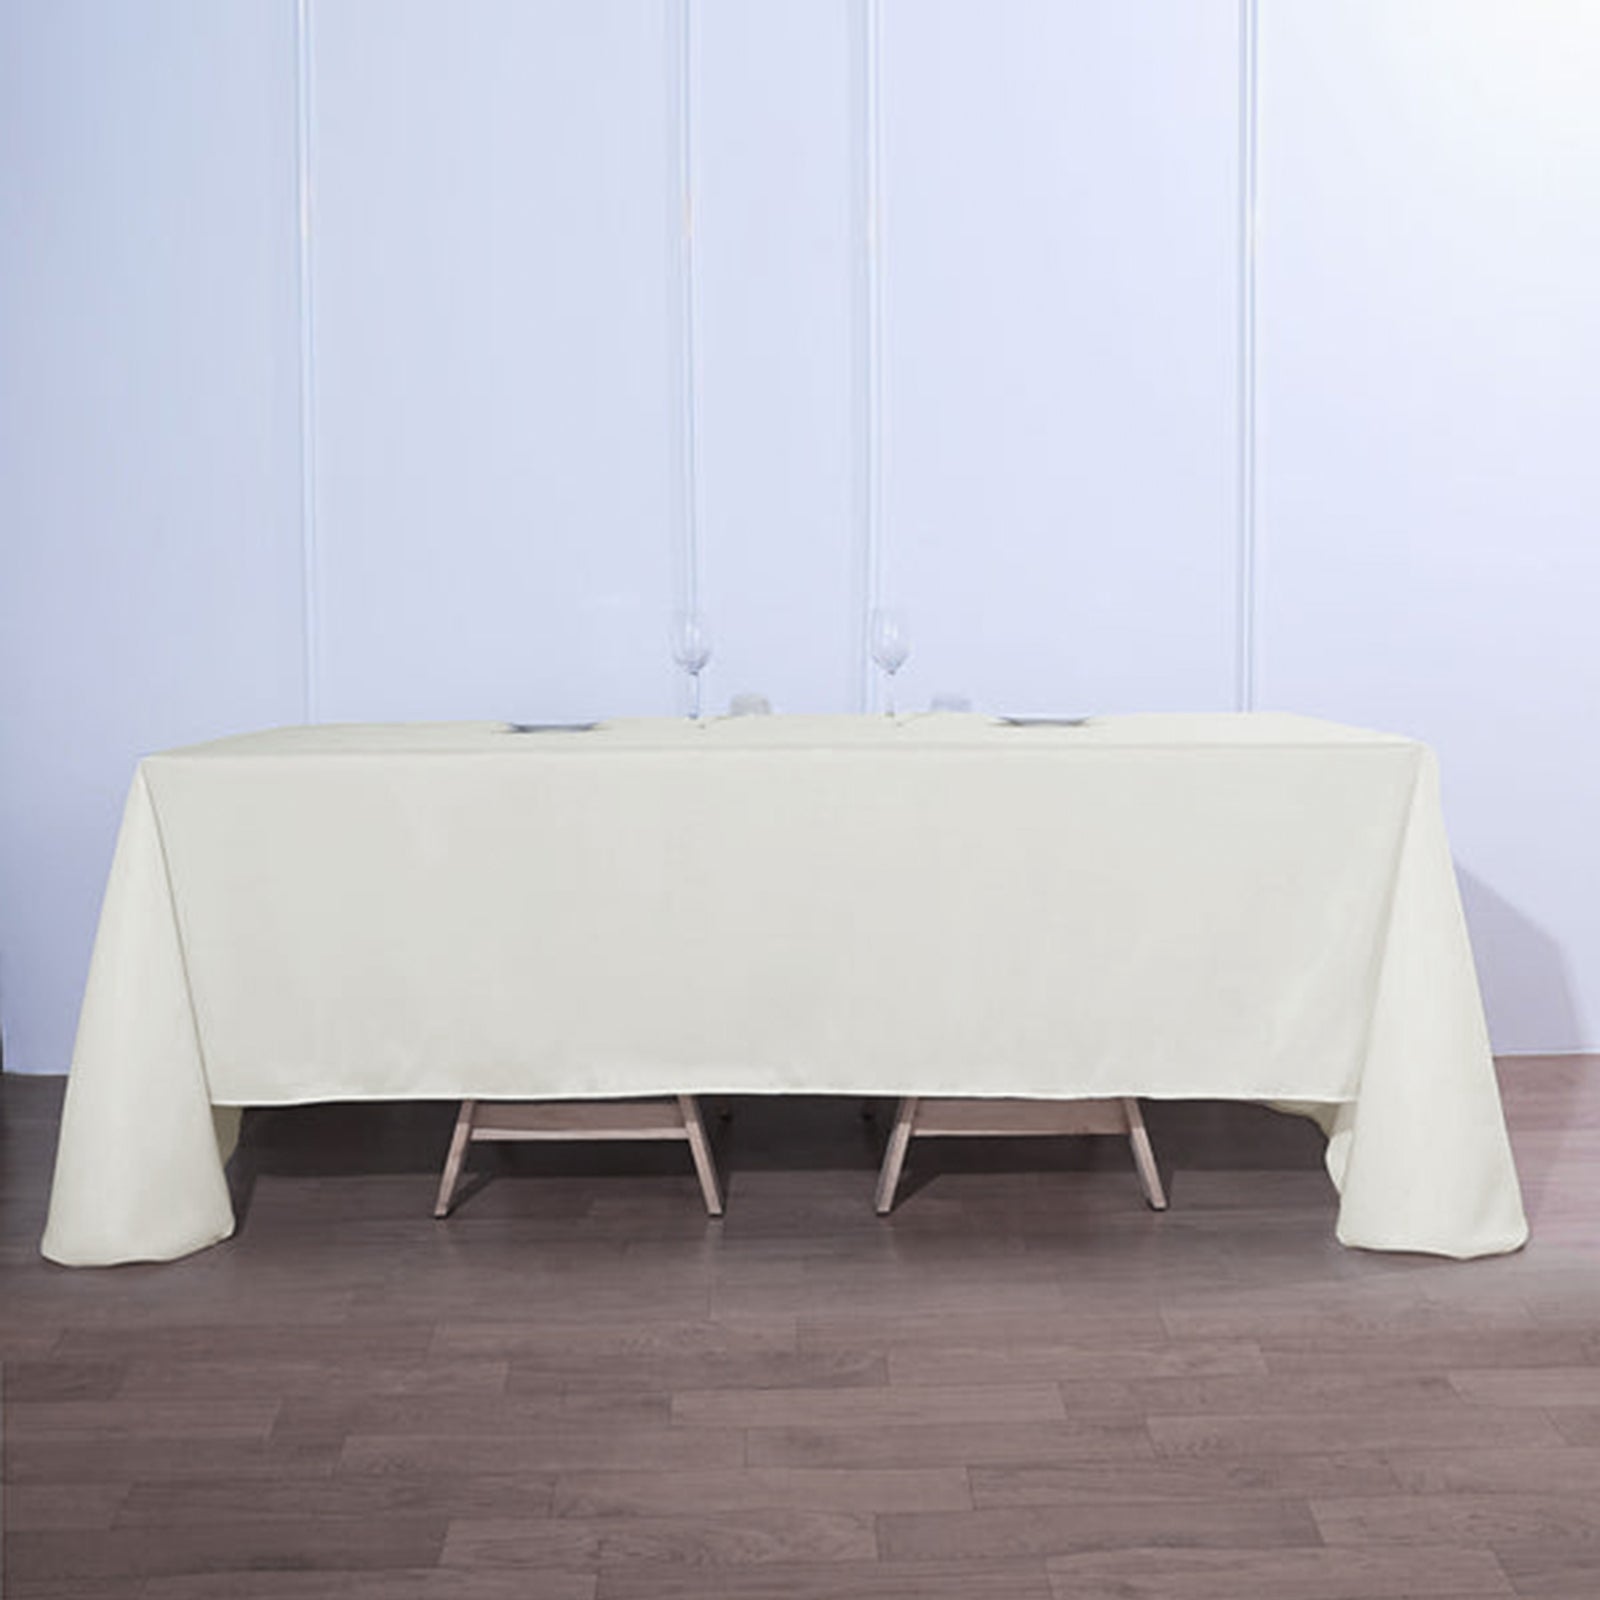 Sleek Satin Tablecloth 90x132 Rectangular - Ivory